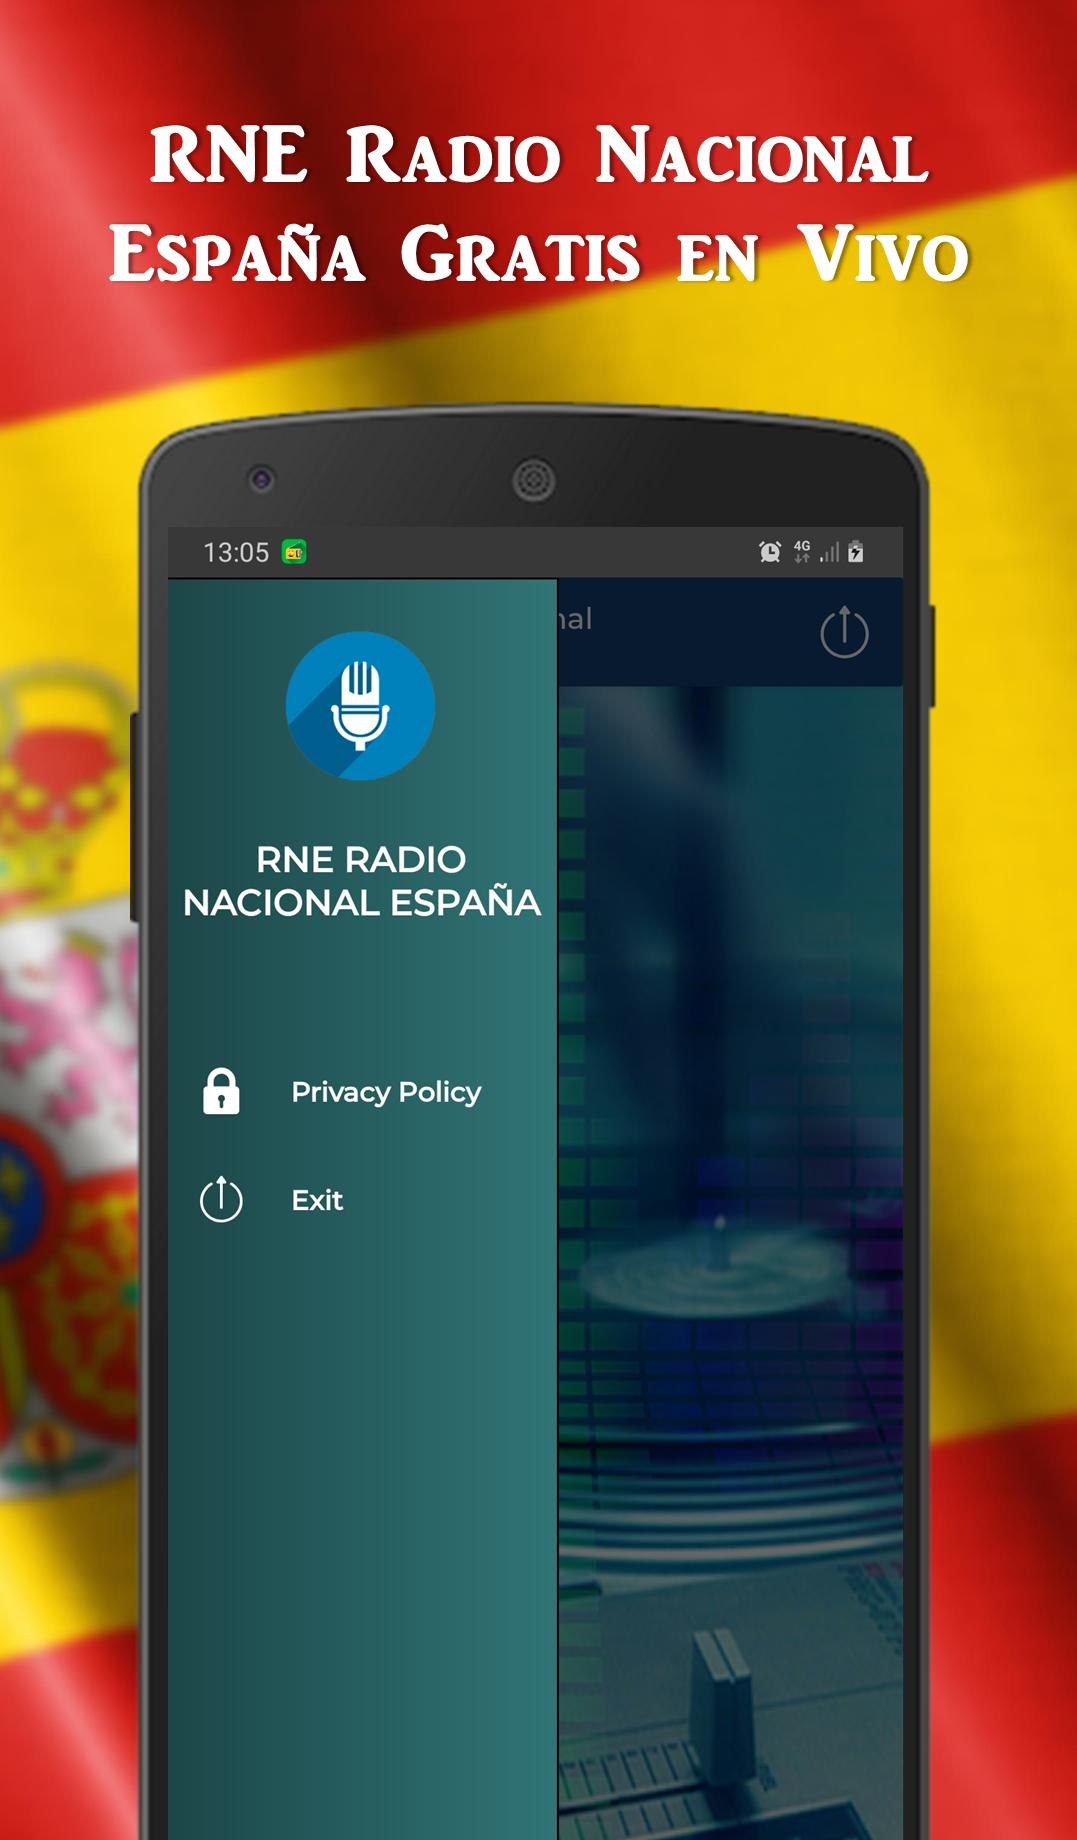 RNE Radio Nacional - Radio España Online en Vivo for Android - APK Download